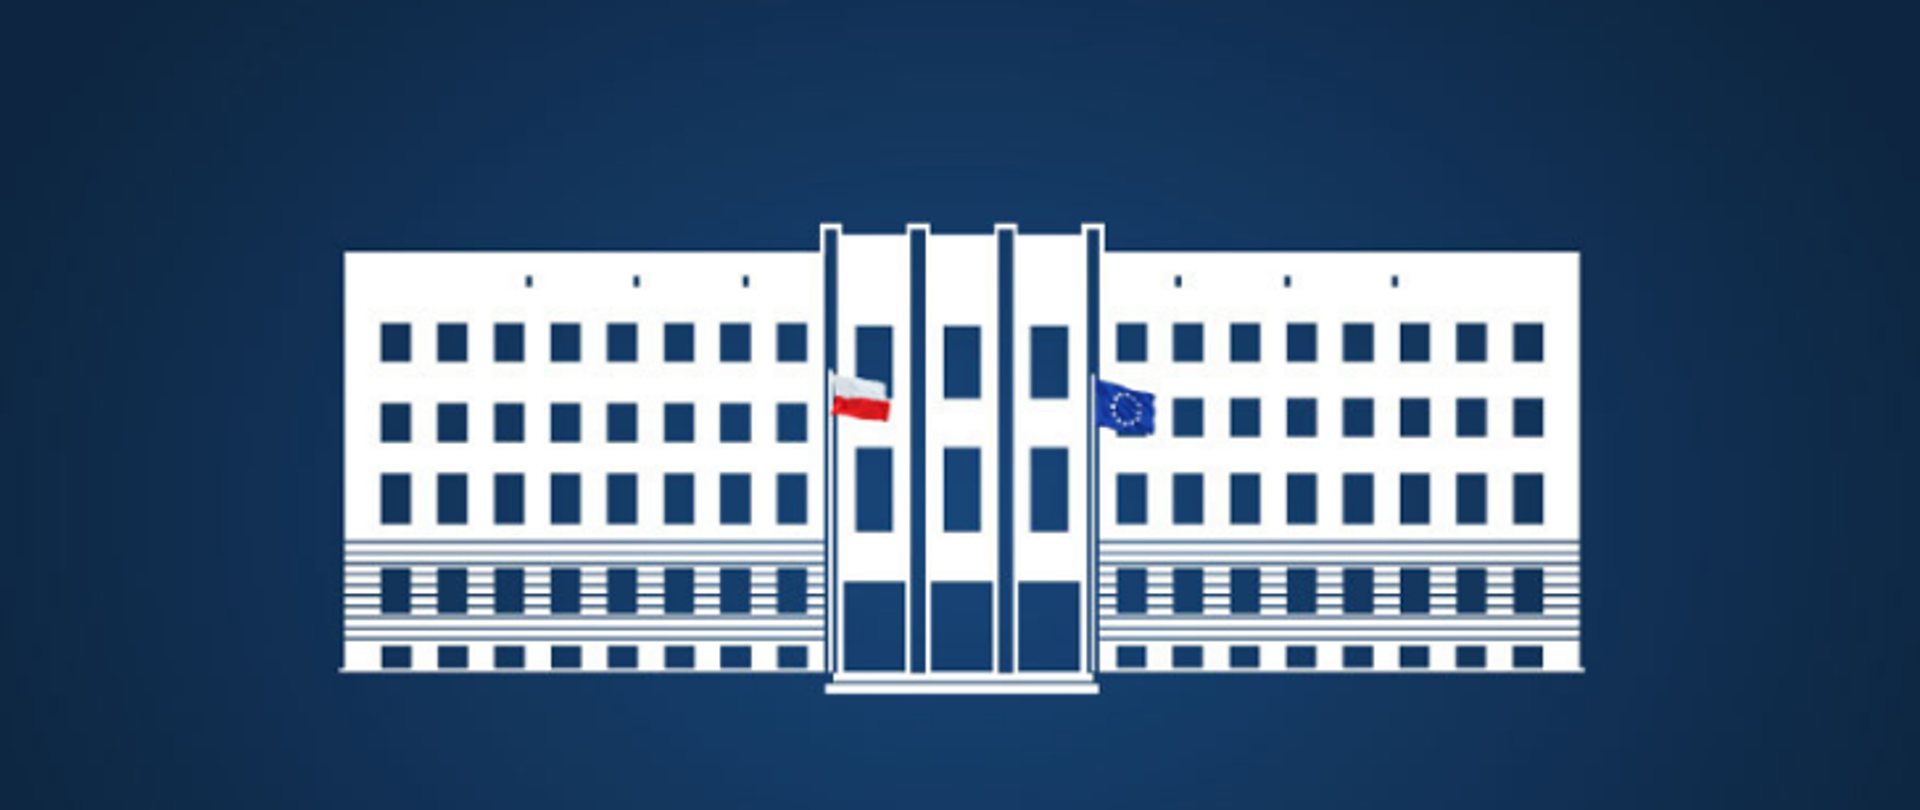 Https gov pl. Логотип PNG посольства Республики Польша.